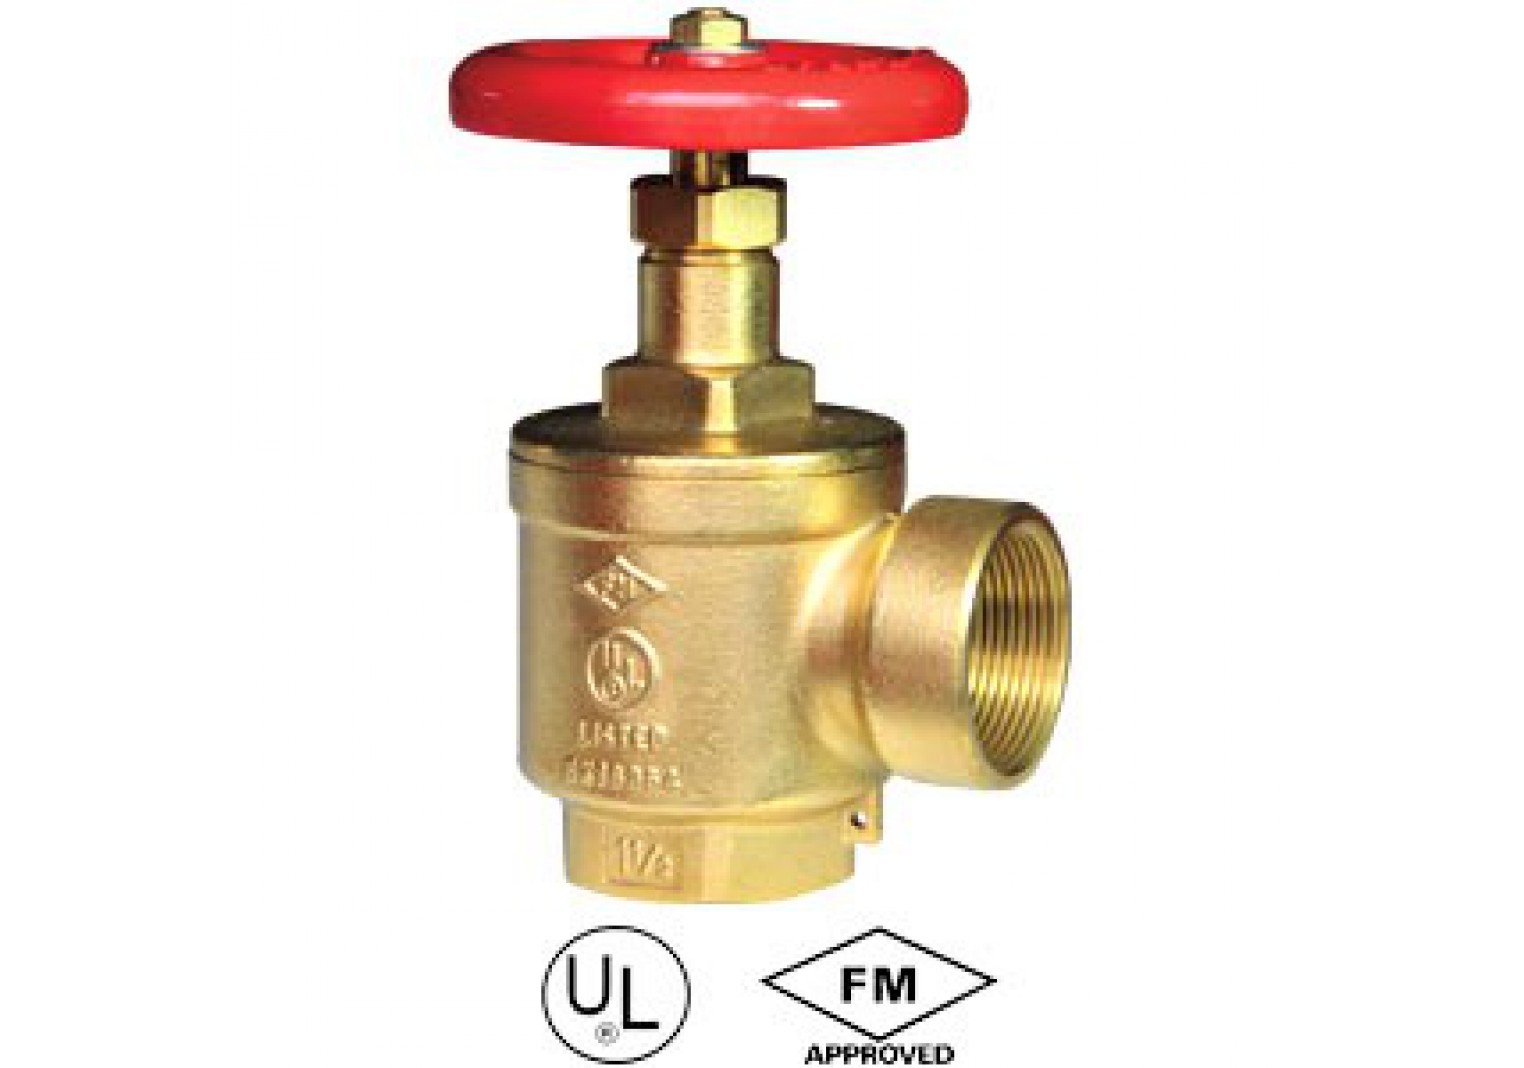 วาล์วท่อมุม Angle hose valve F11-65